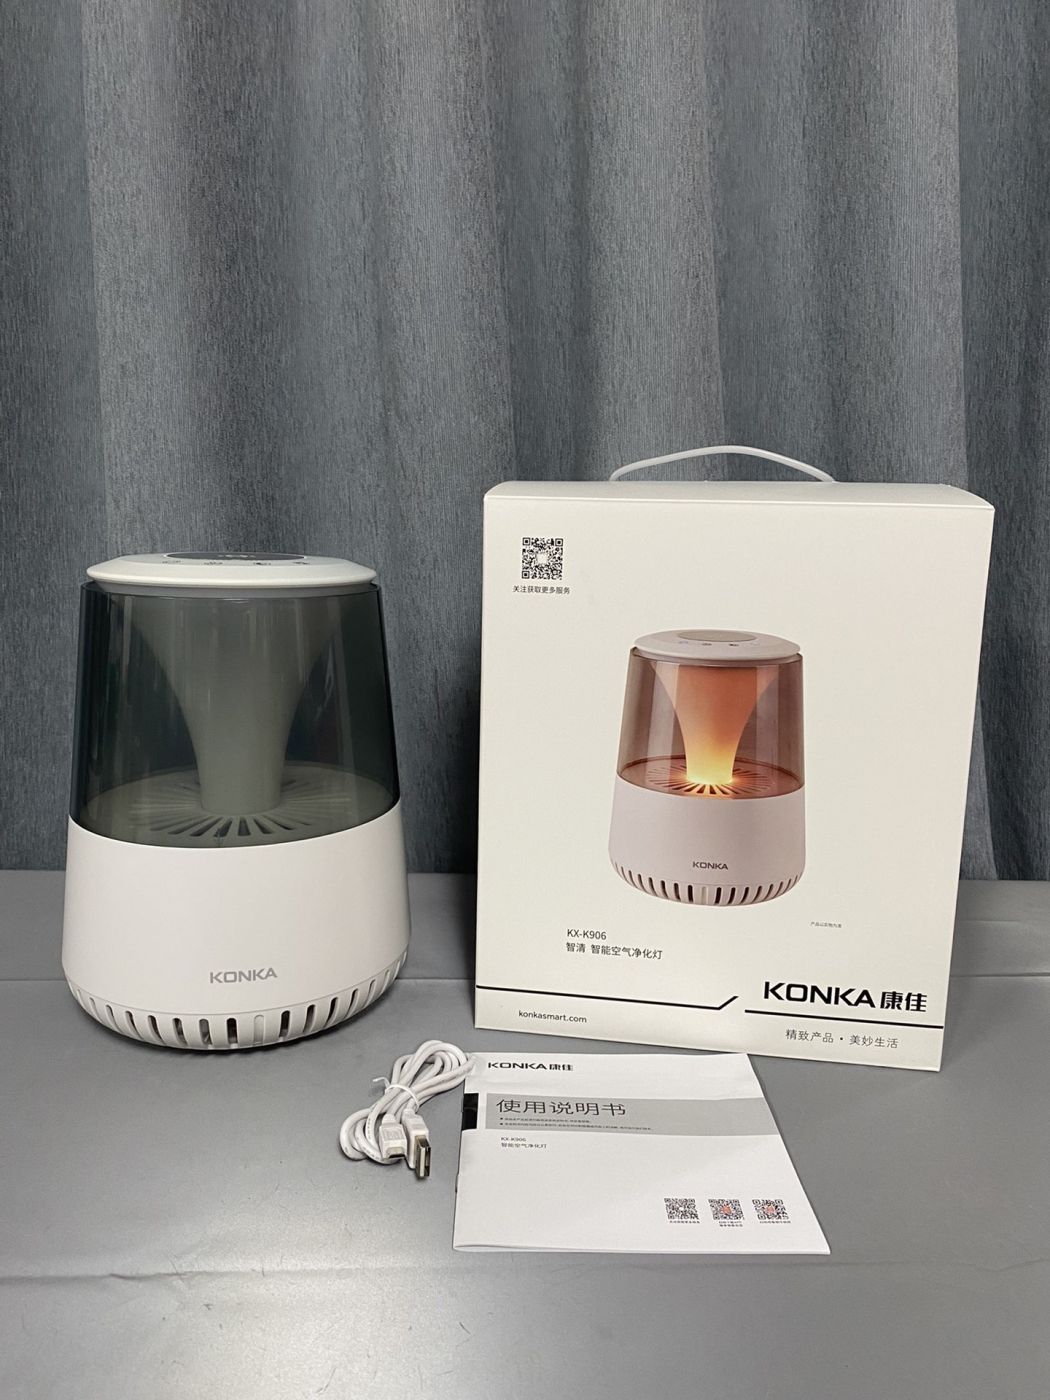 Đèn lọc không khí thông minh KONKA KX-K906 , kết nối App,chỉnh đèn, tạo ion âm